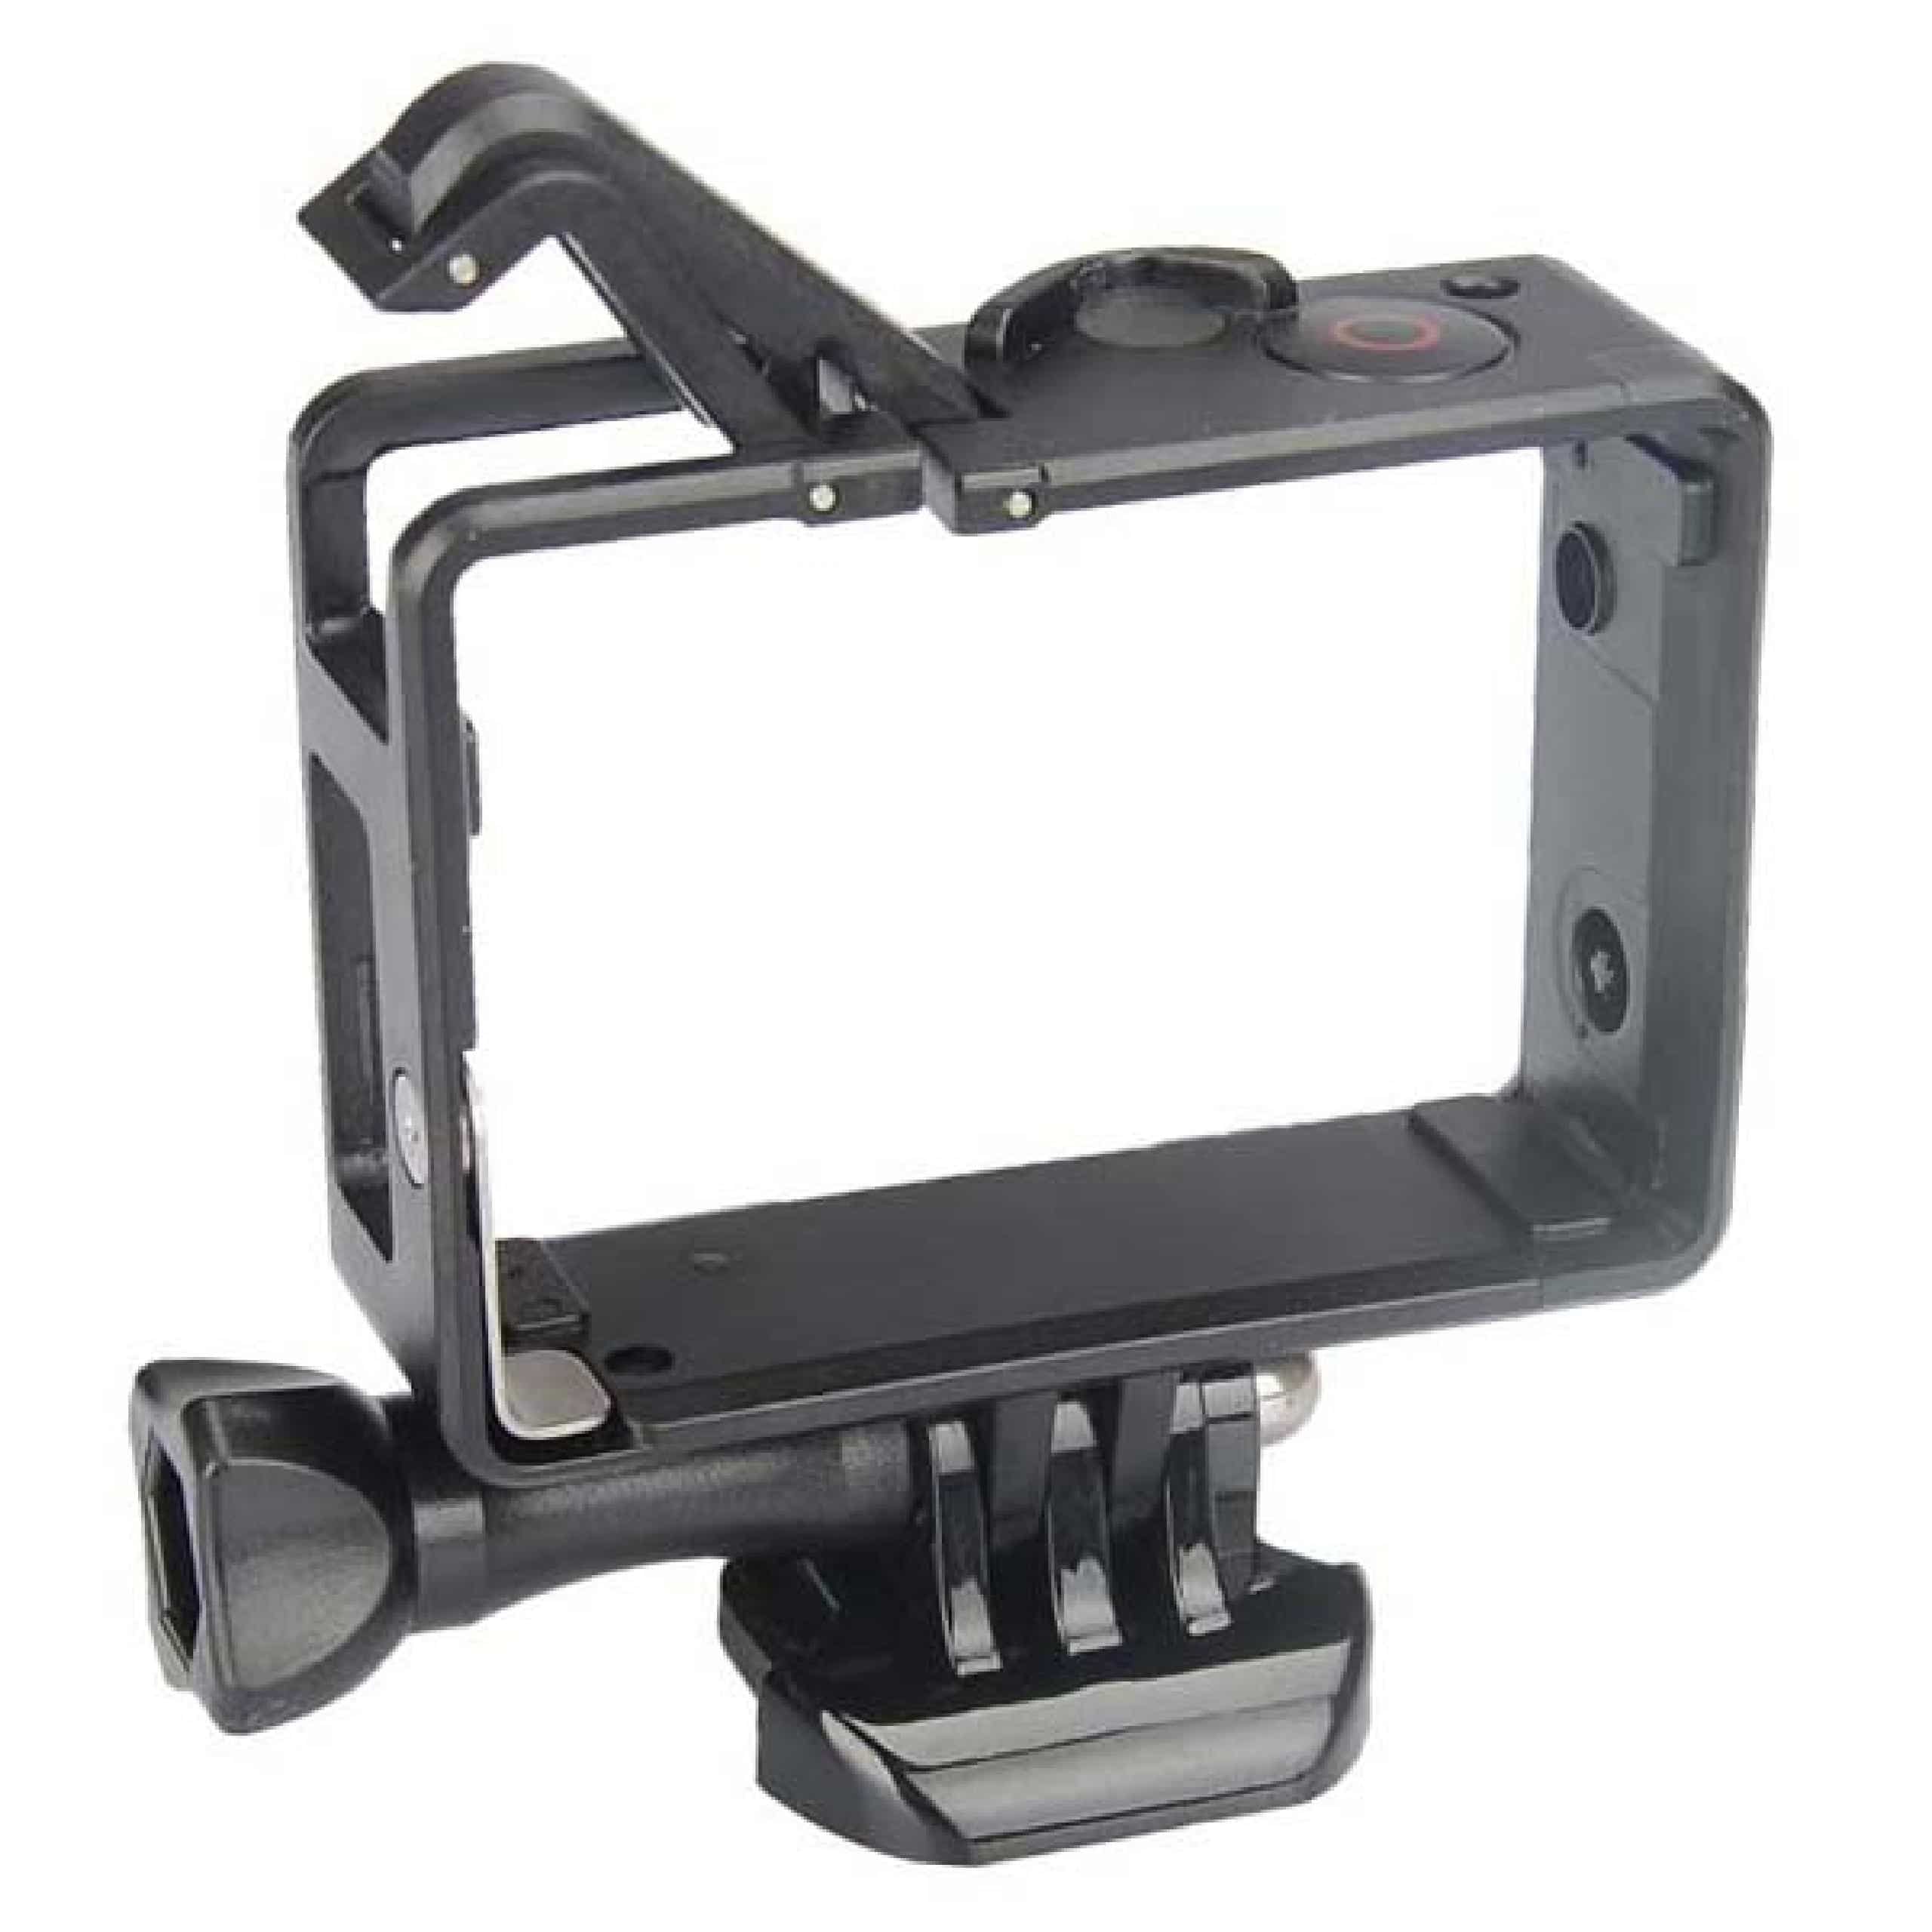 Soporte de marco para cámara de acción GoPro Hero 5 Black - plástico, negro